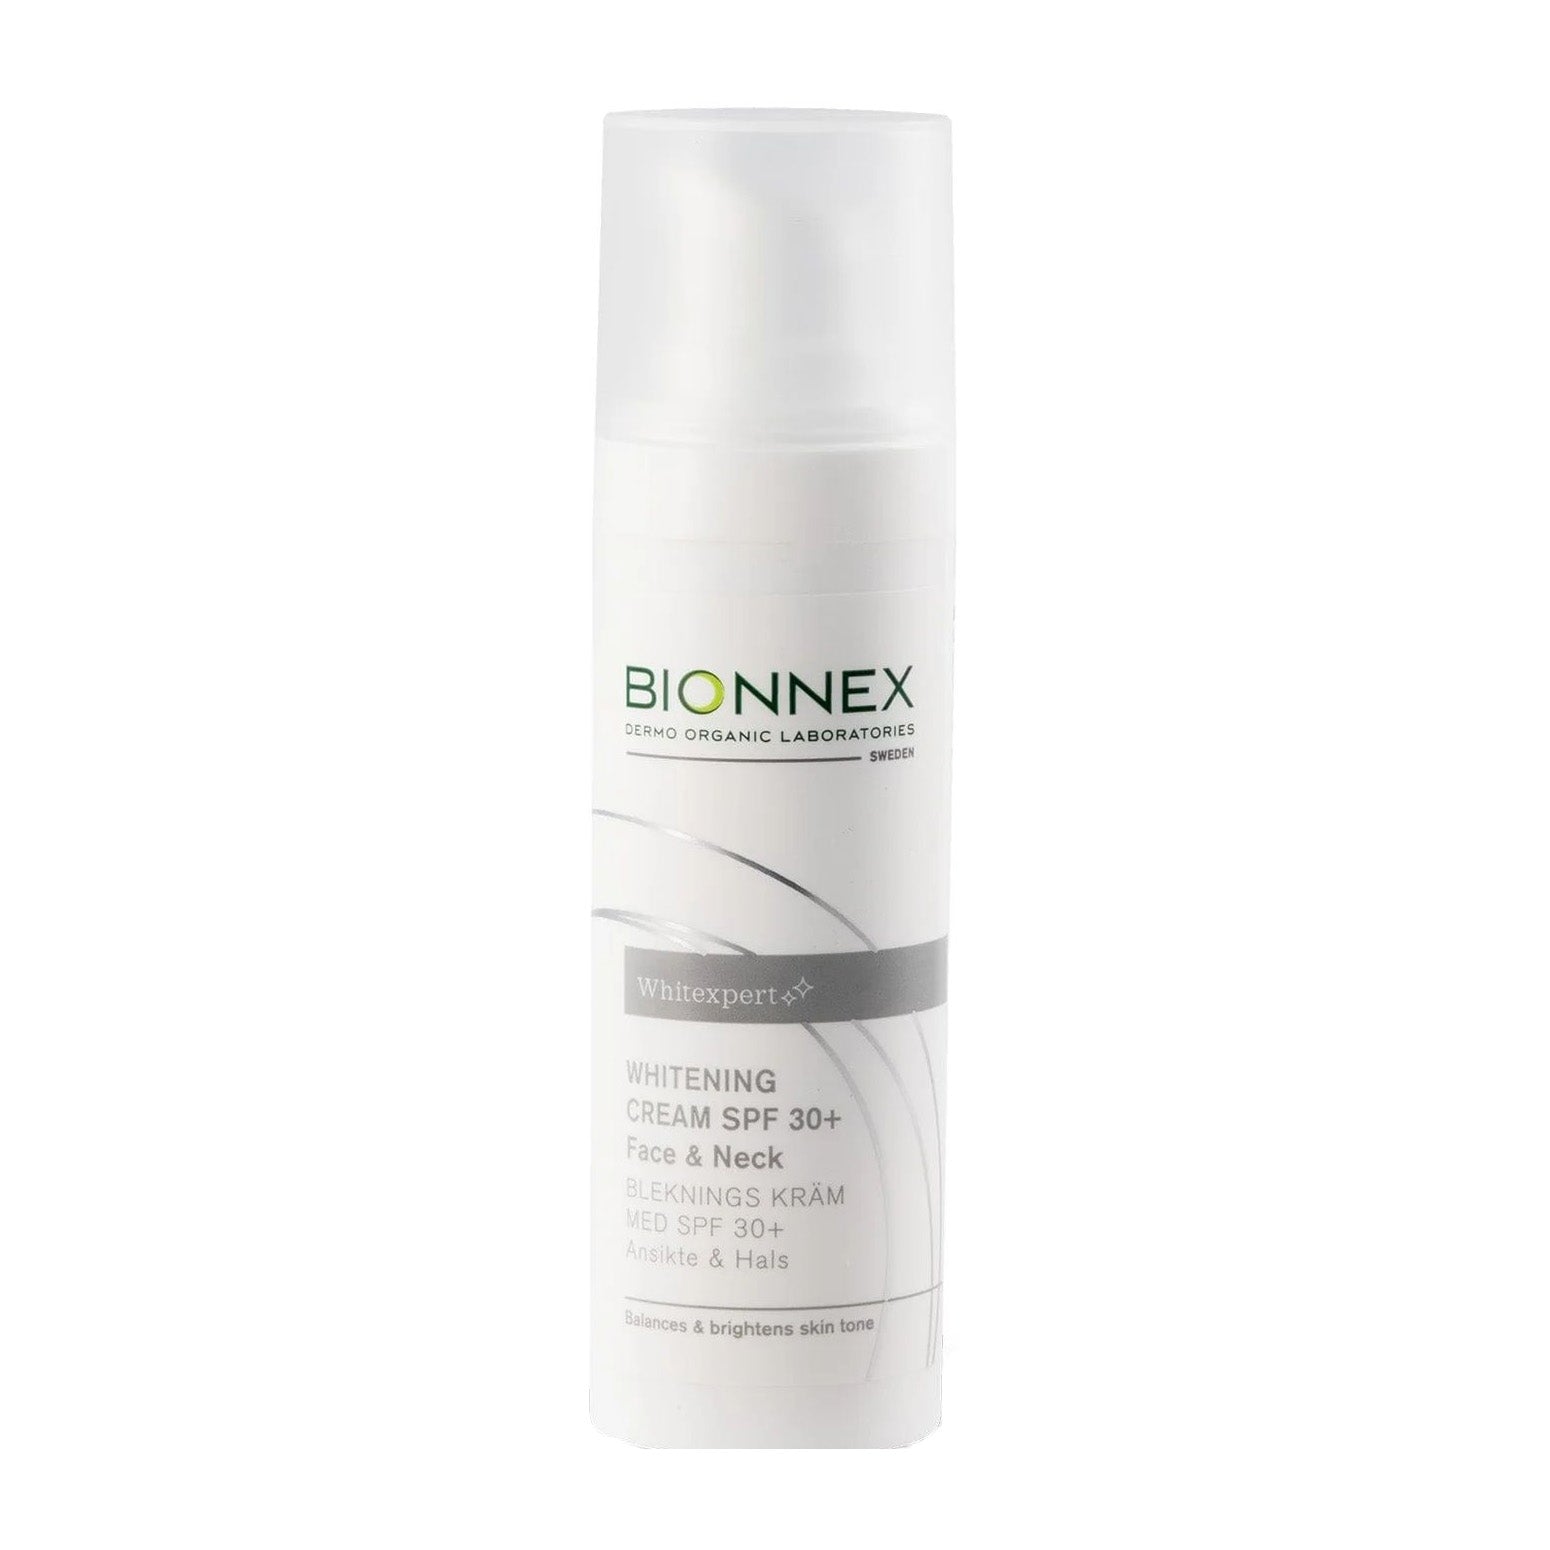 Bionnex Whitening Cream SPF 30+ Face & Neck – 30ml - Bloom Pharmacy